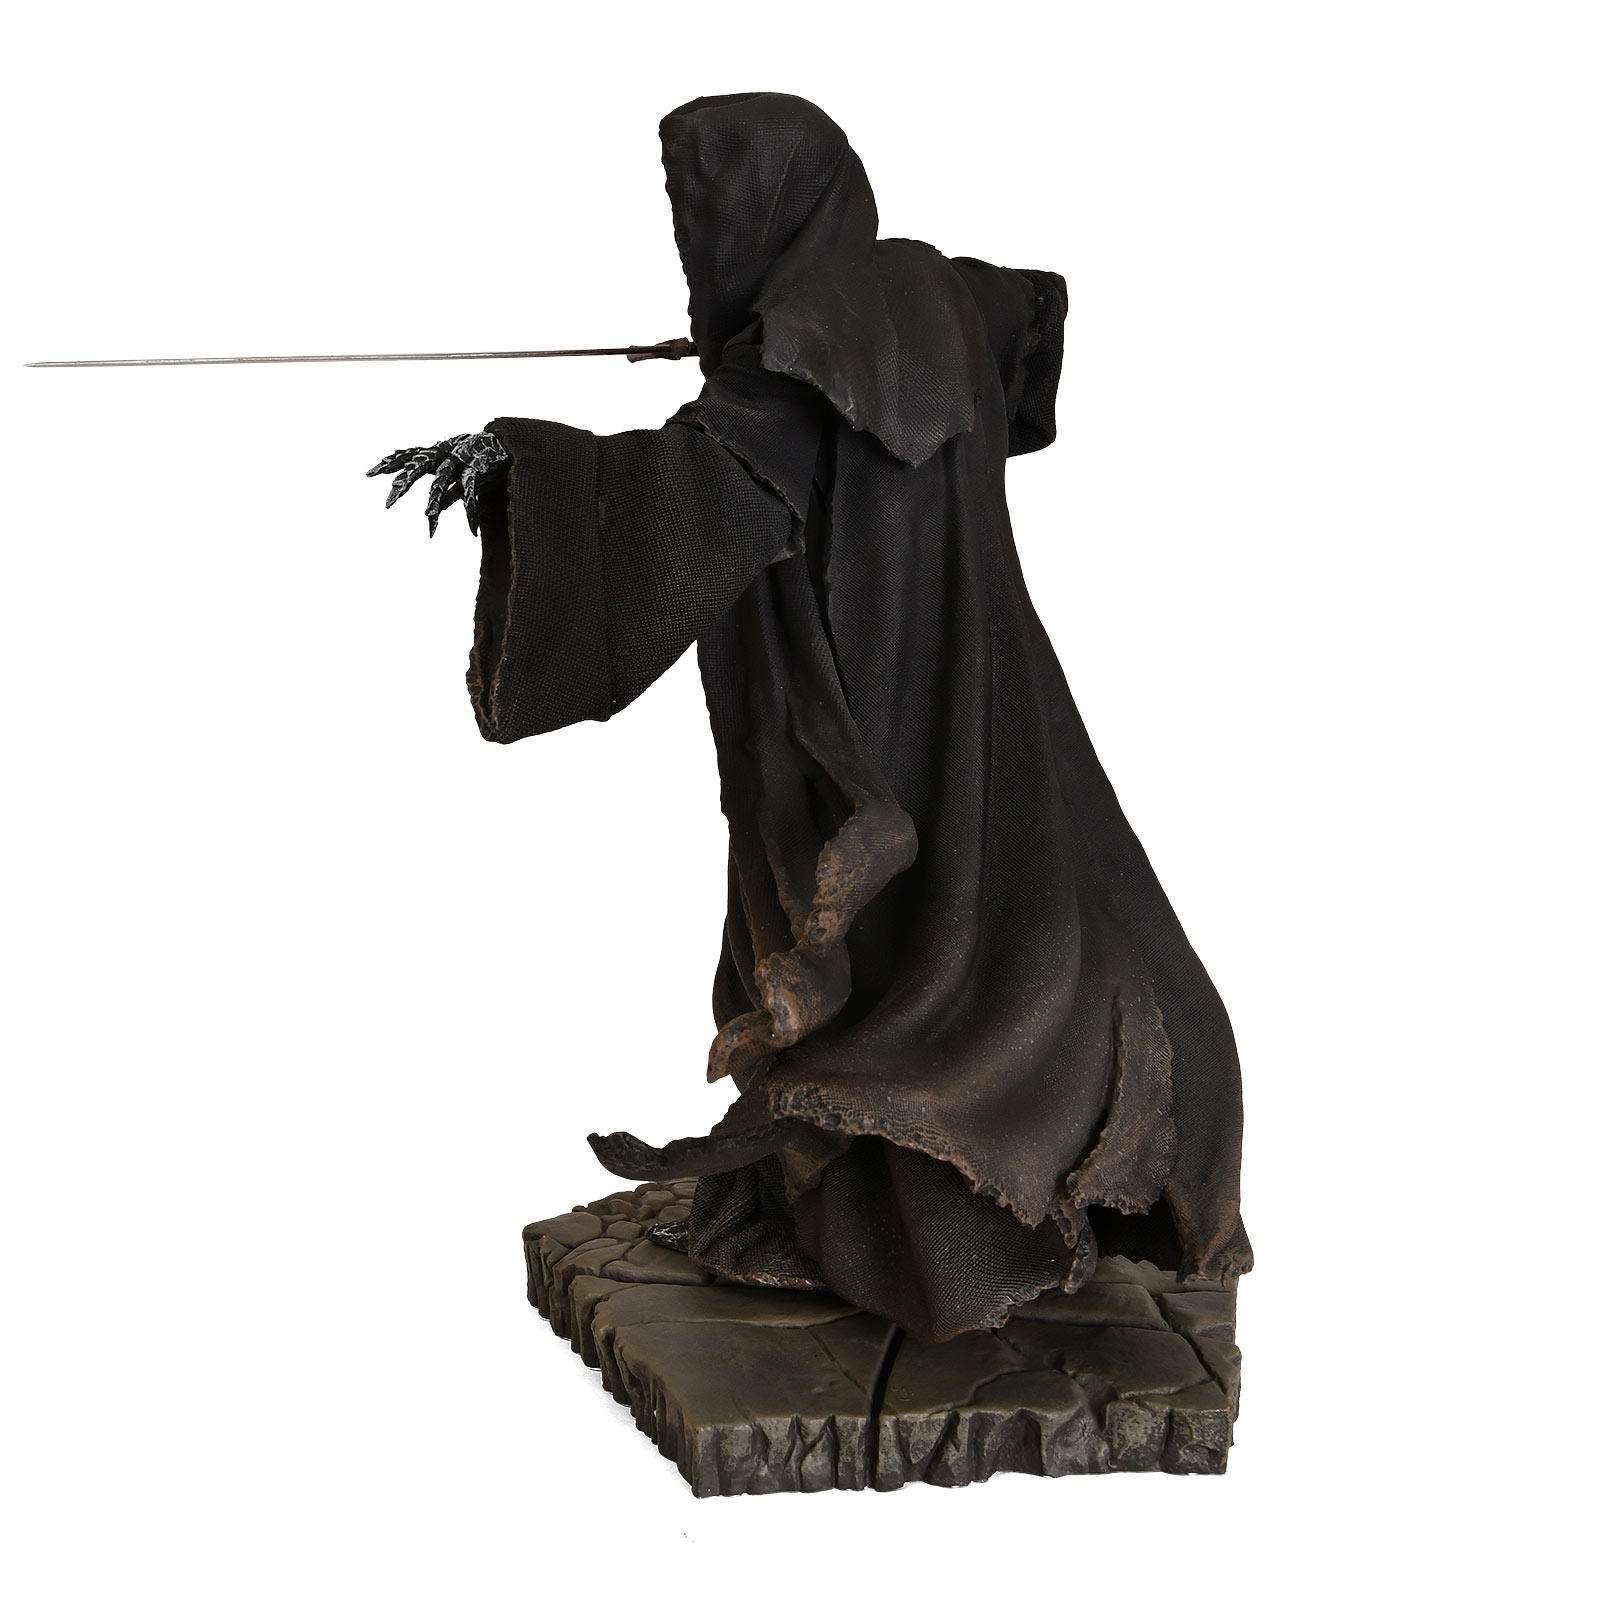 Heer der Ringen - Aanvallende Nazgul BDS Art Scale Deluxe Standbeeld 22 cm